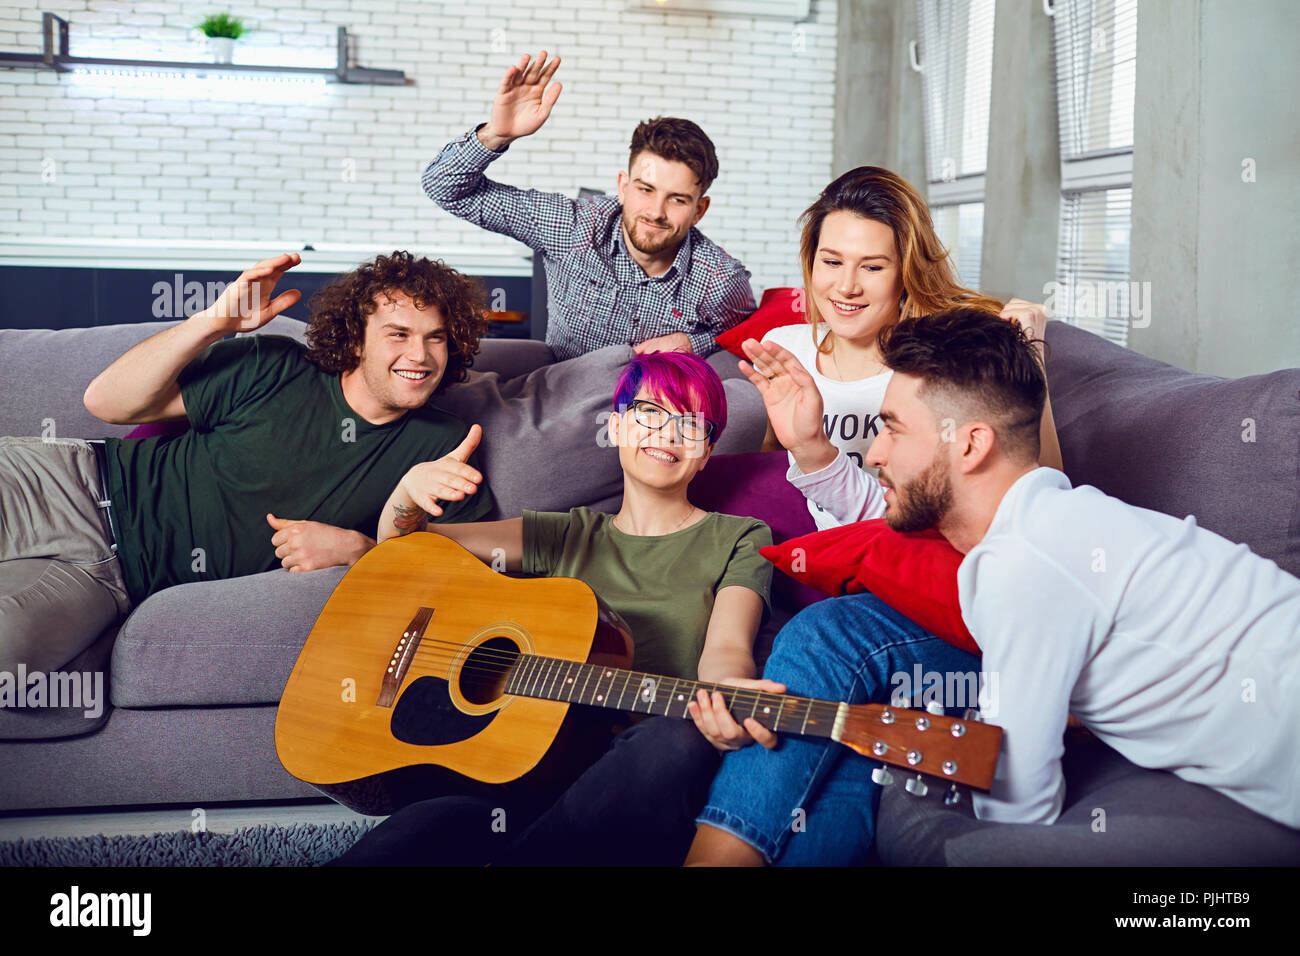 Eine Gruppe von Freunden mit einer Gitarre auf einer Party in einem Raum. Stockfoto